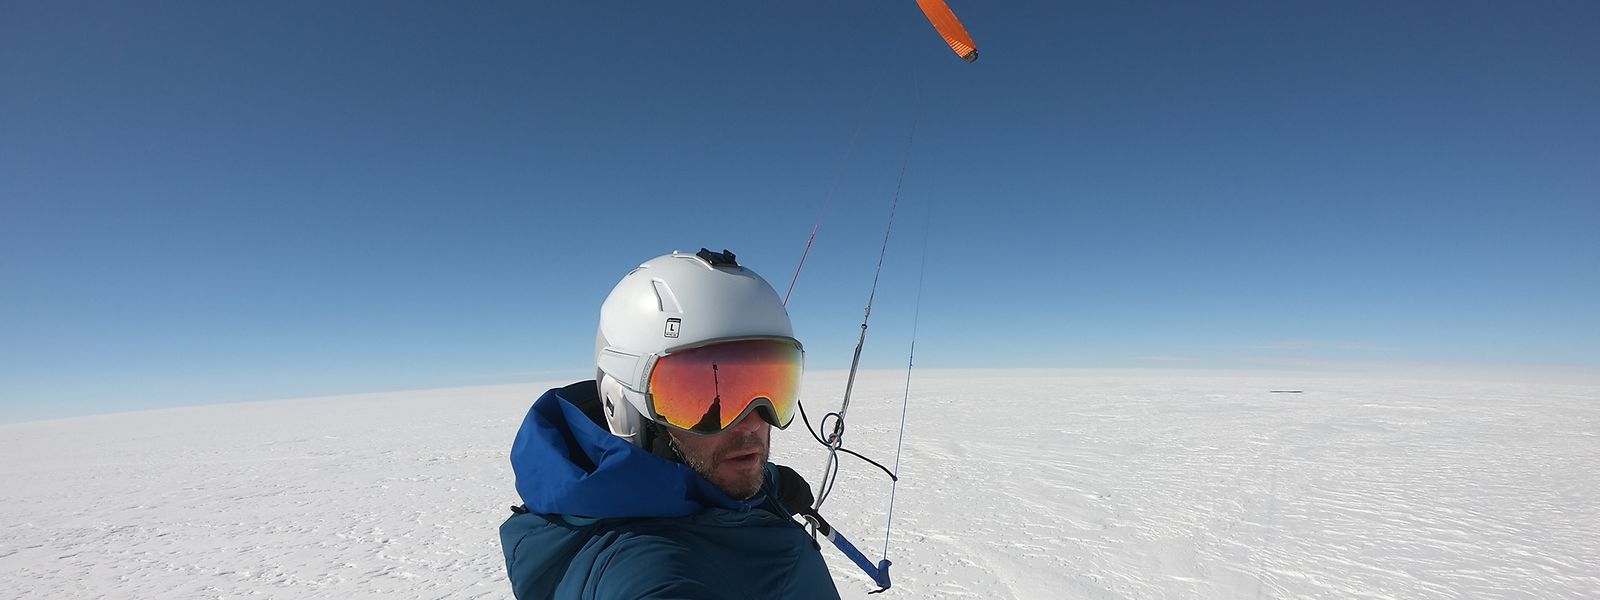 Patrick Peters mit seinem Kite an einem Bilderbuchtag. Von diesem ließ er sich über die endlose weiße Weite ziehen. 